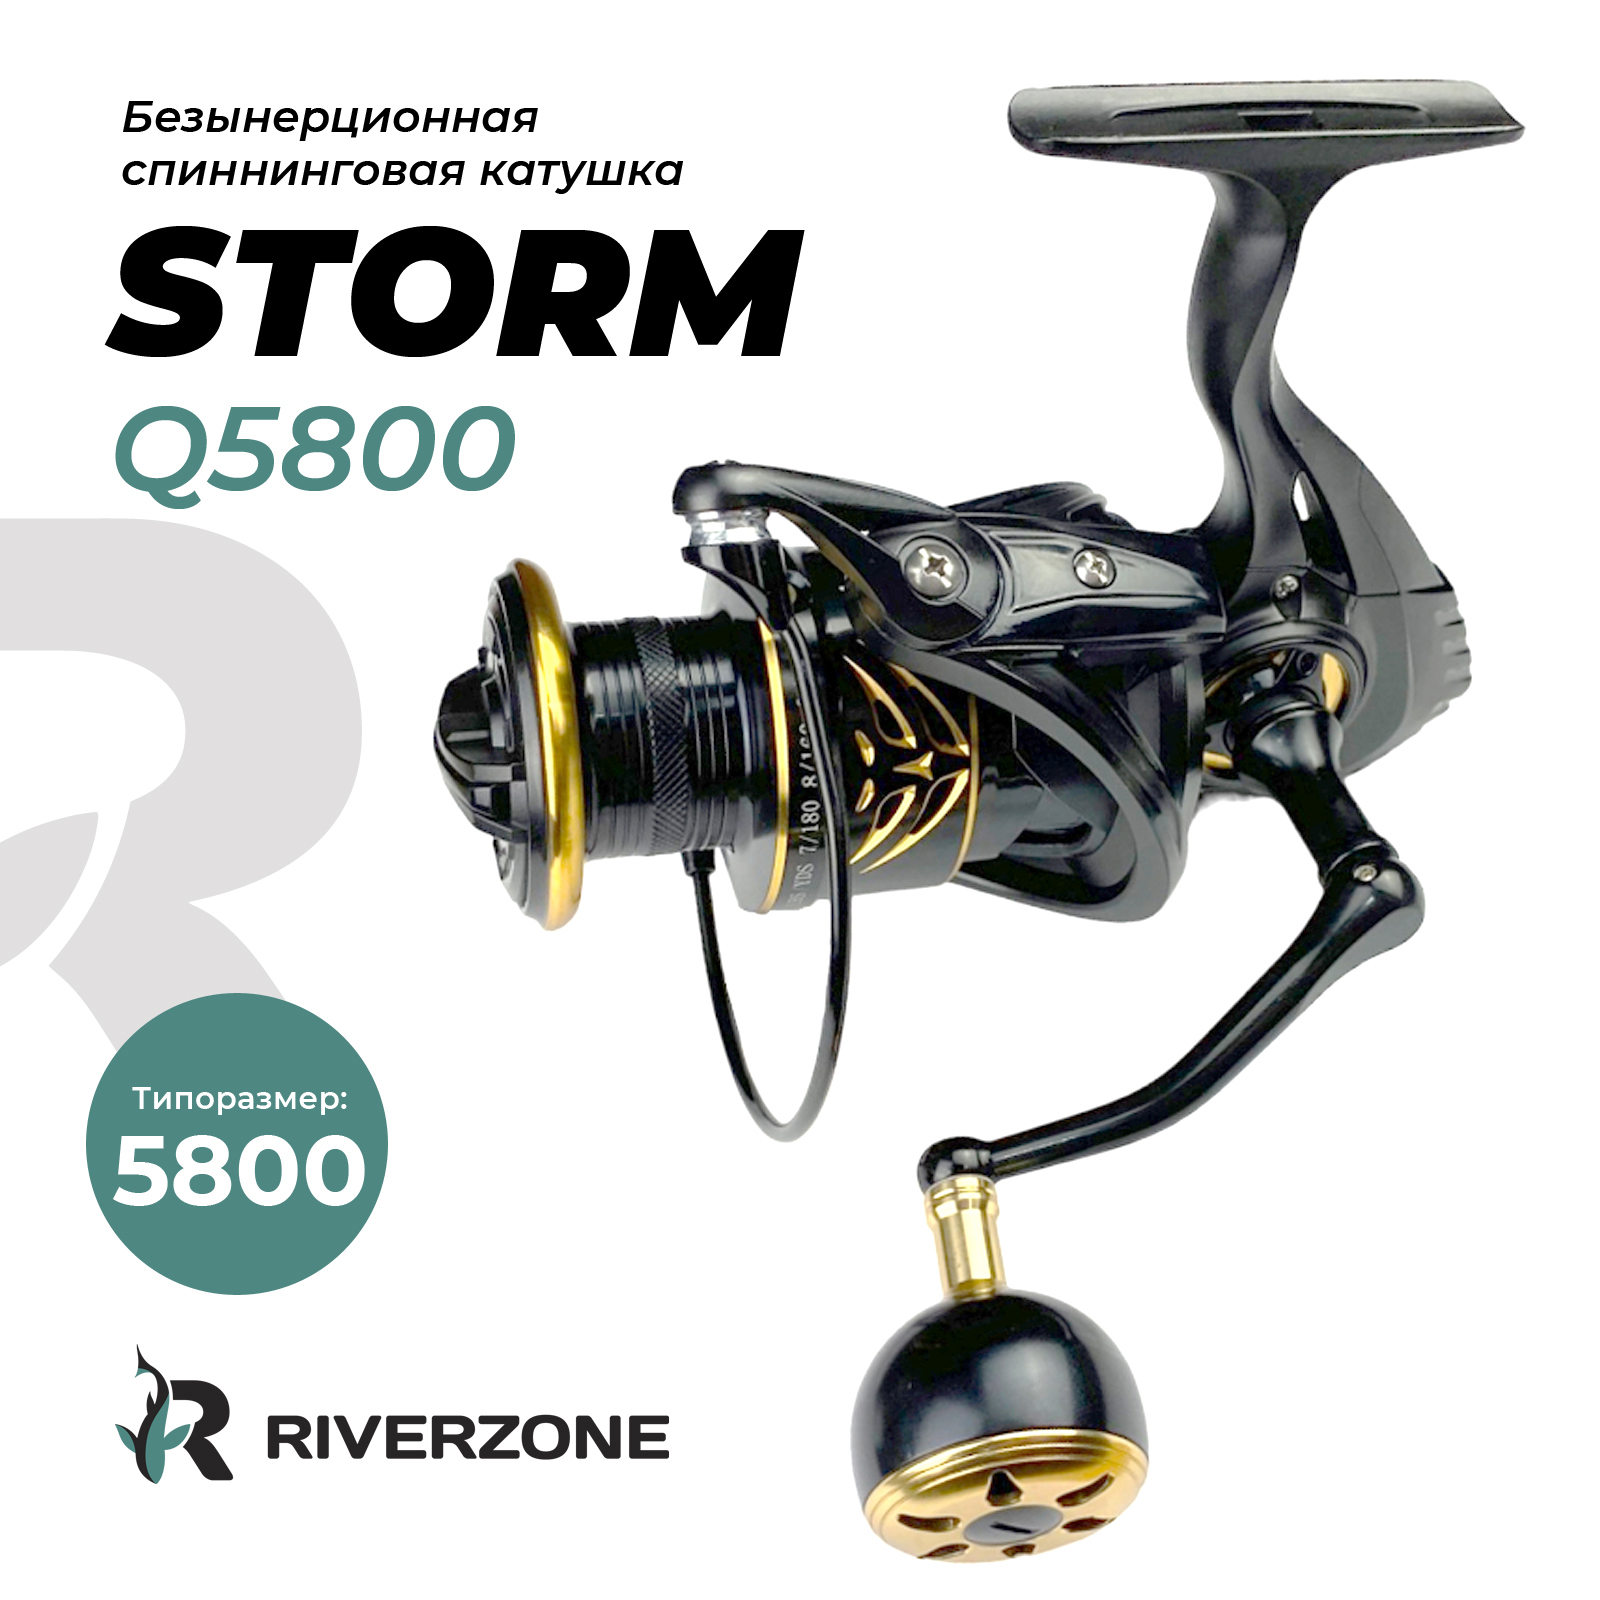 Катушка Riverzone Storm Q5800 - фото 1